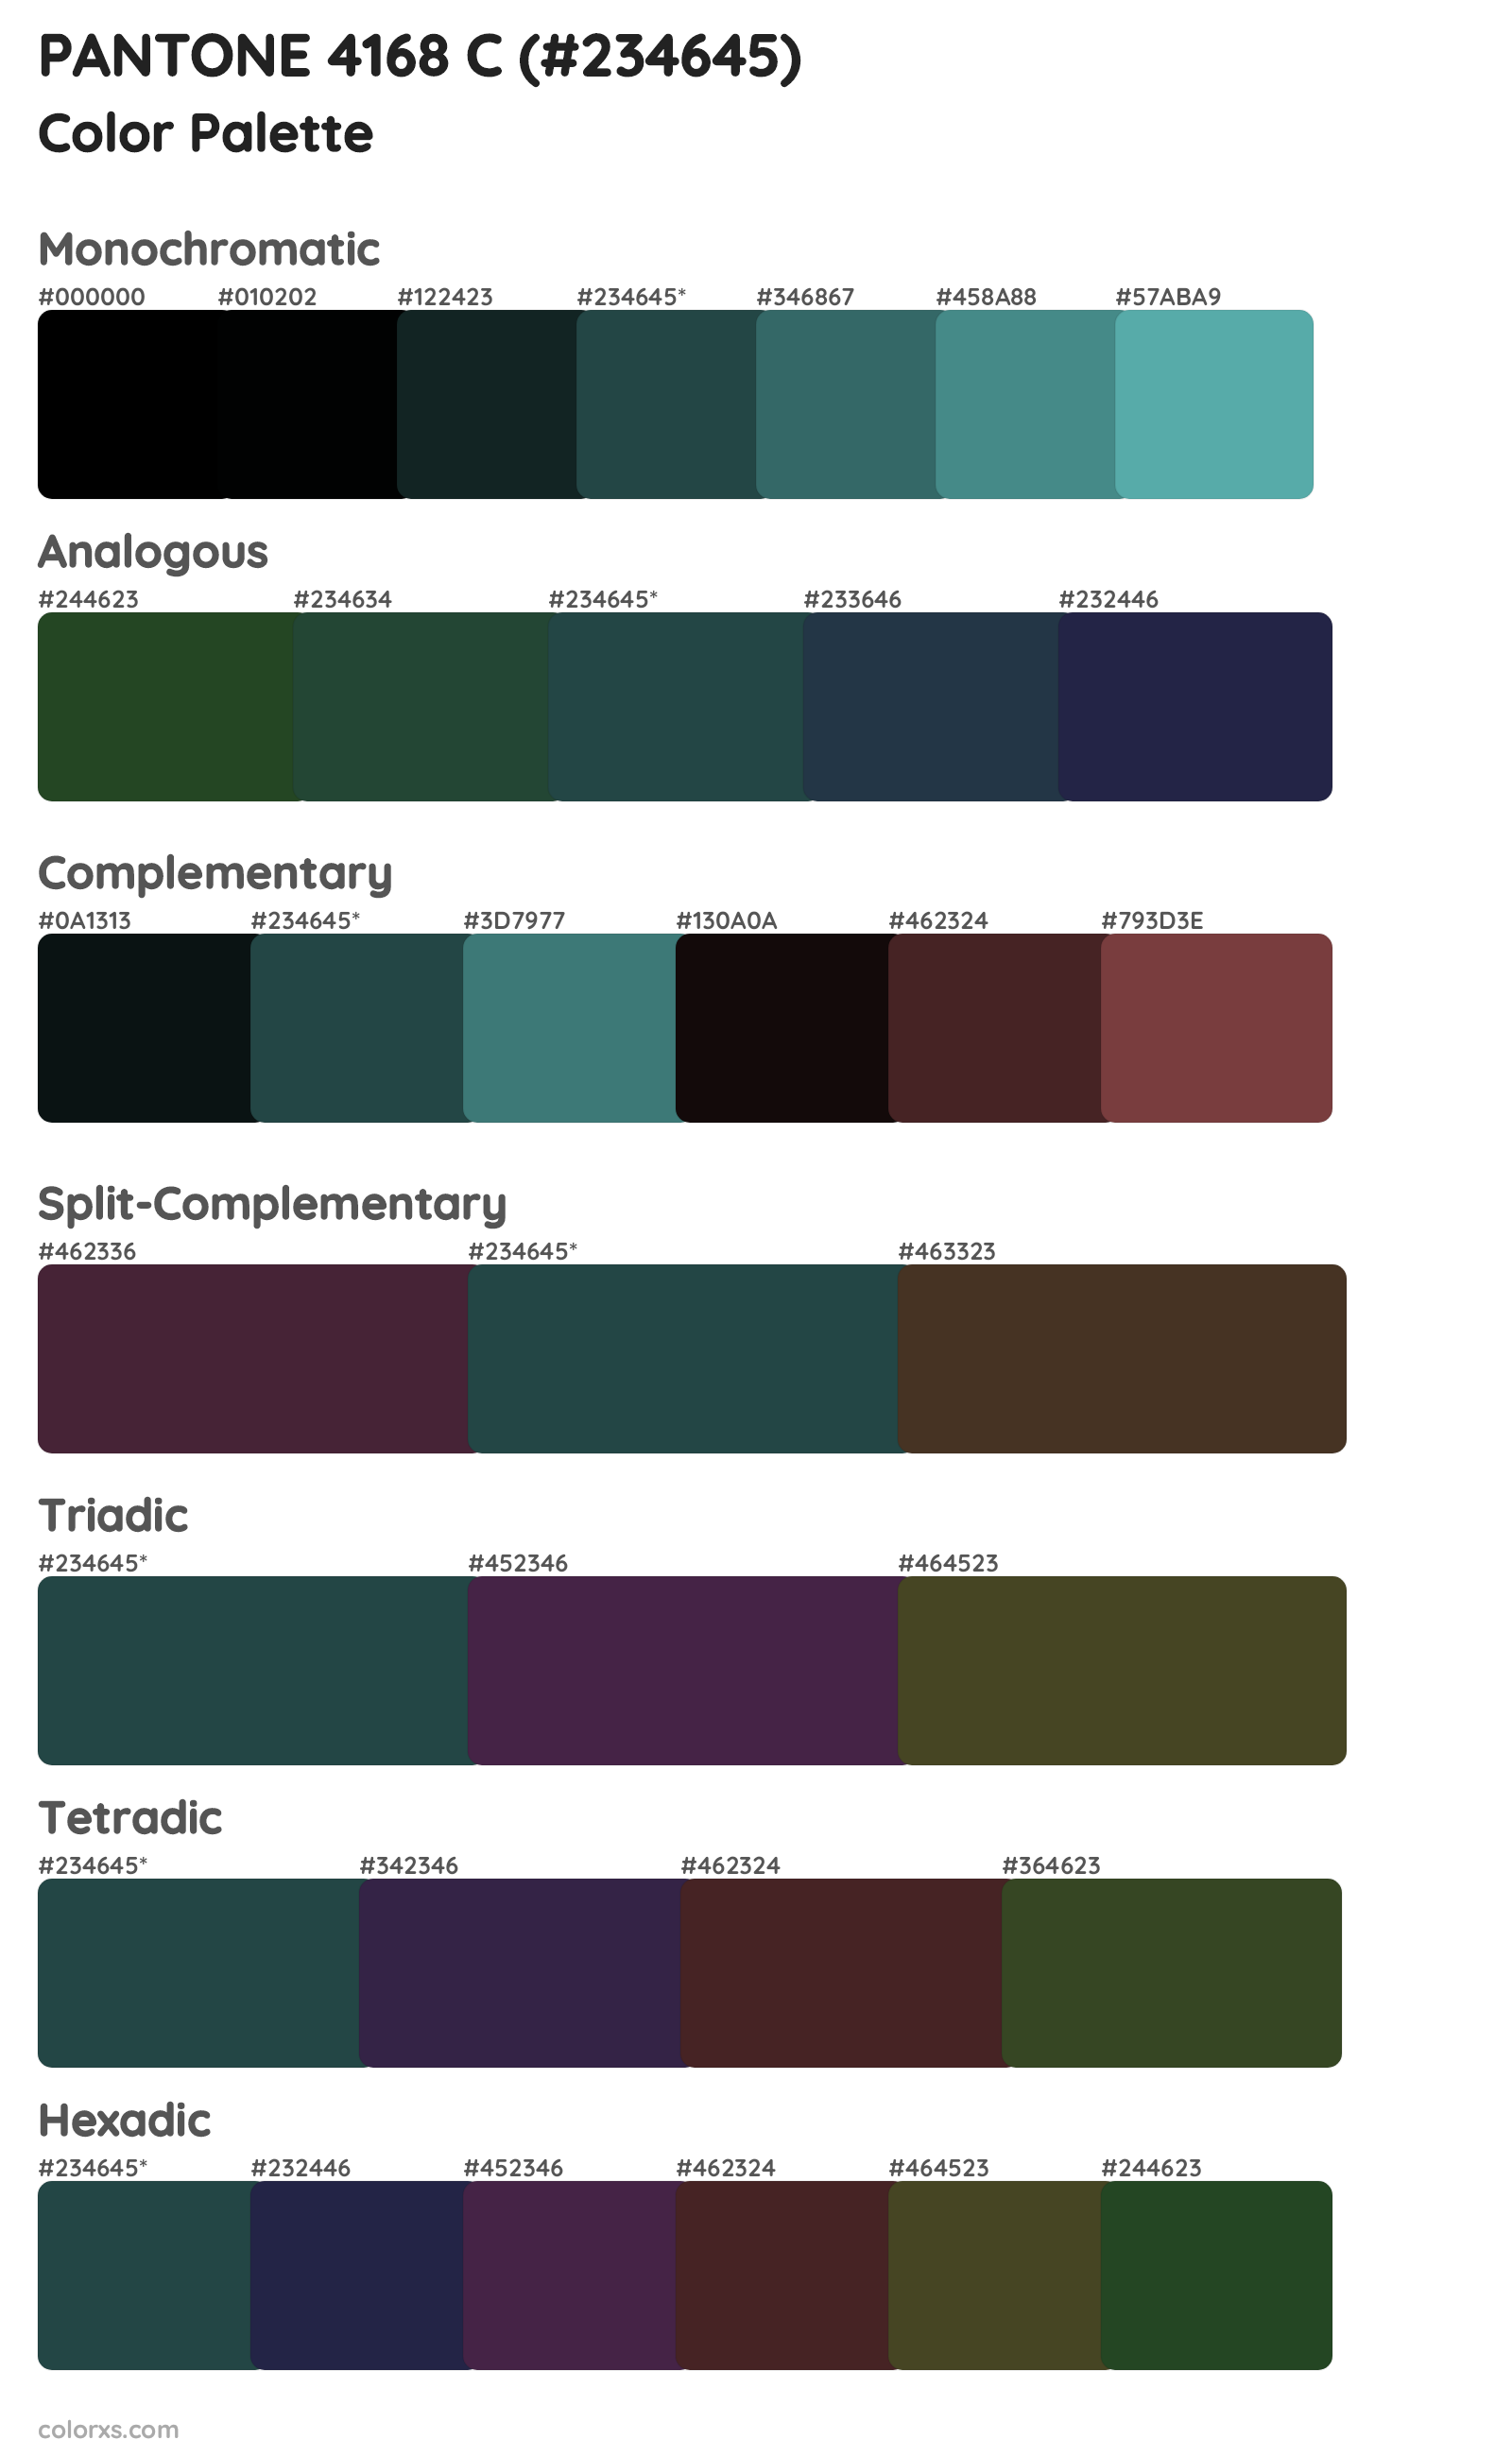 PANTONE 4168 C Color Scheme Palettes